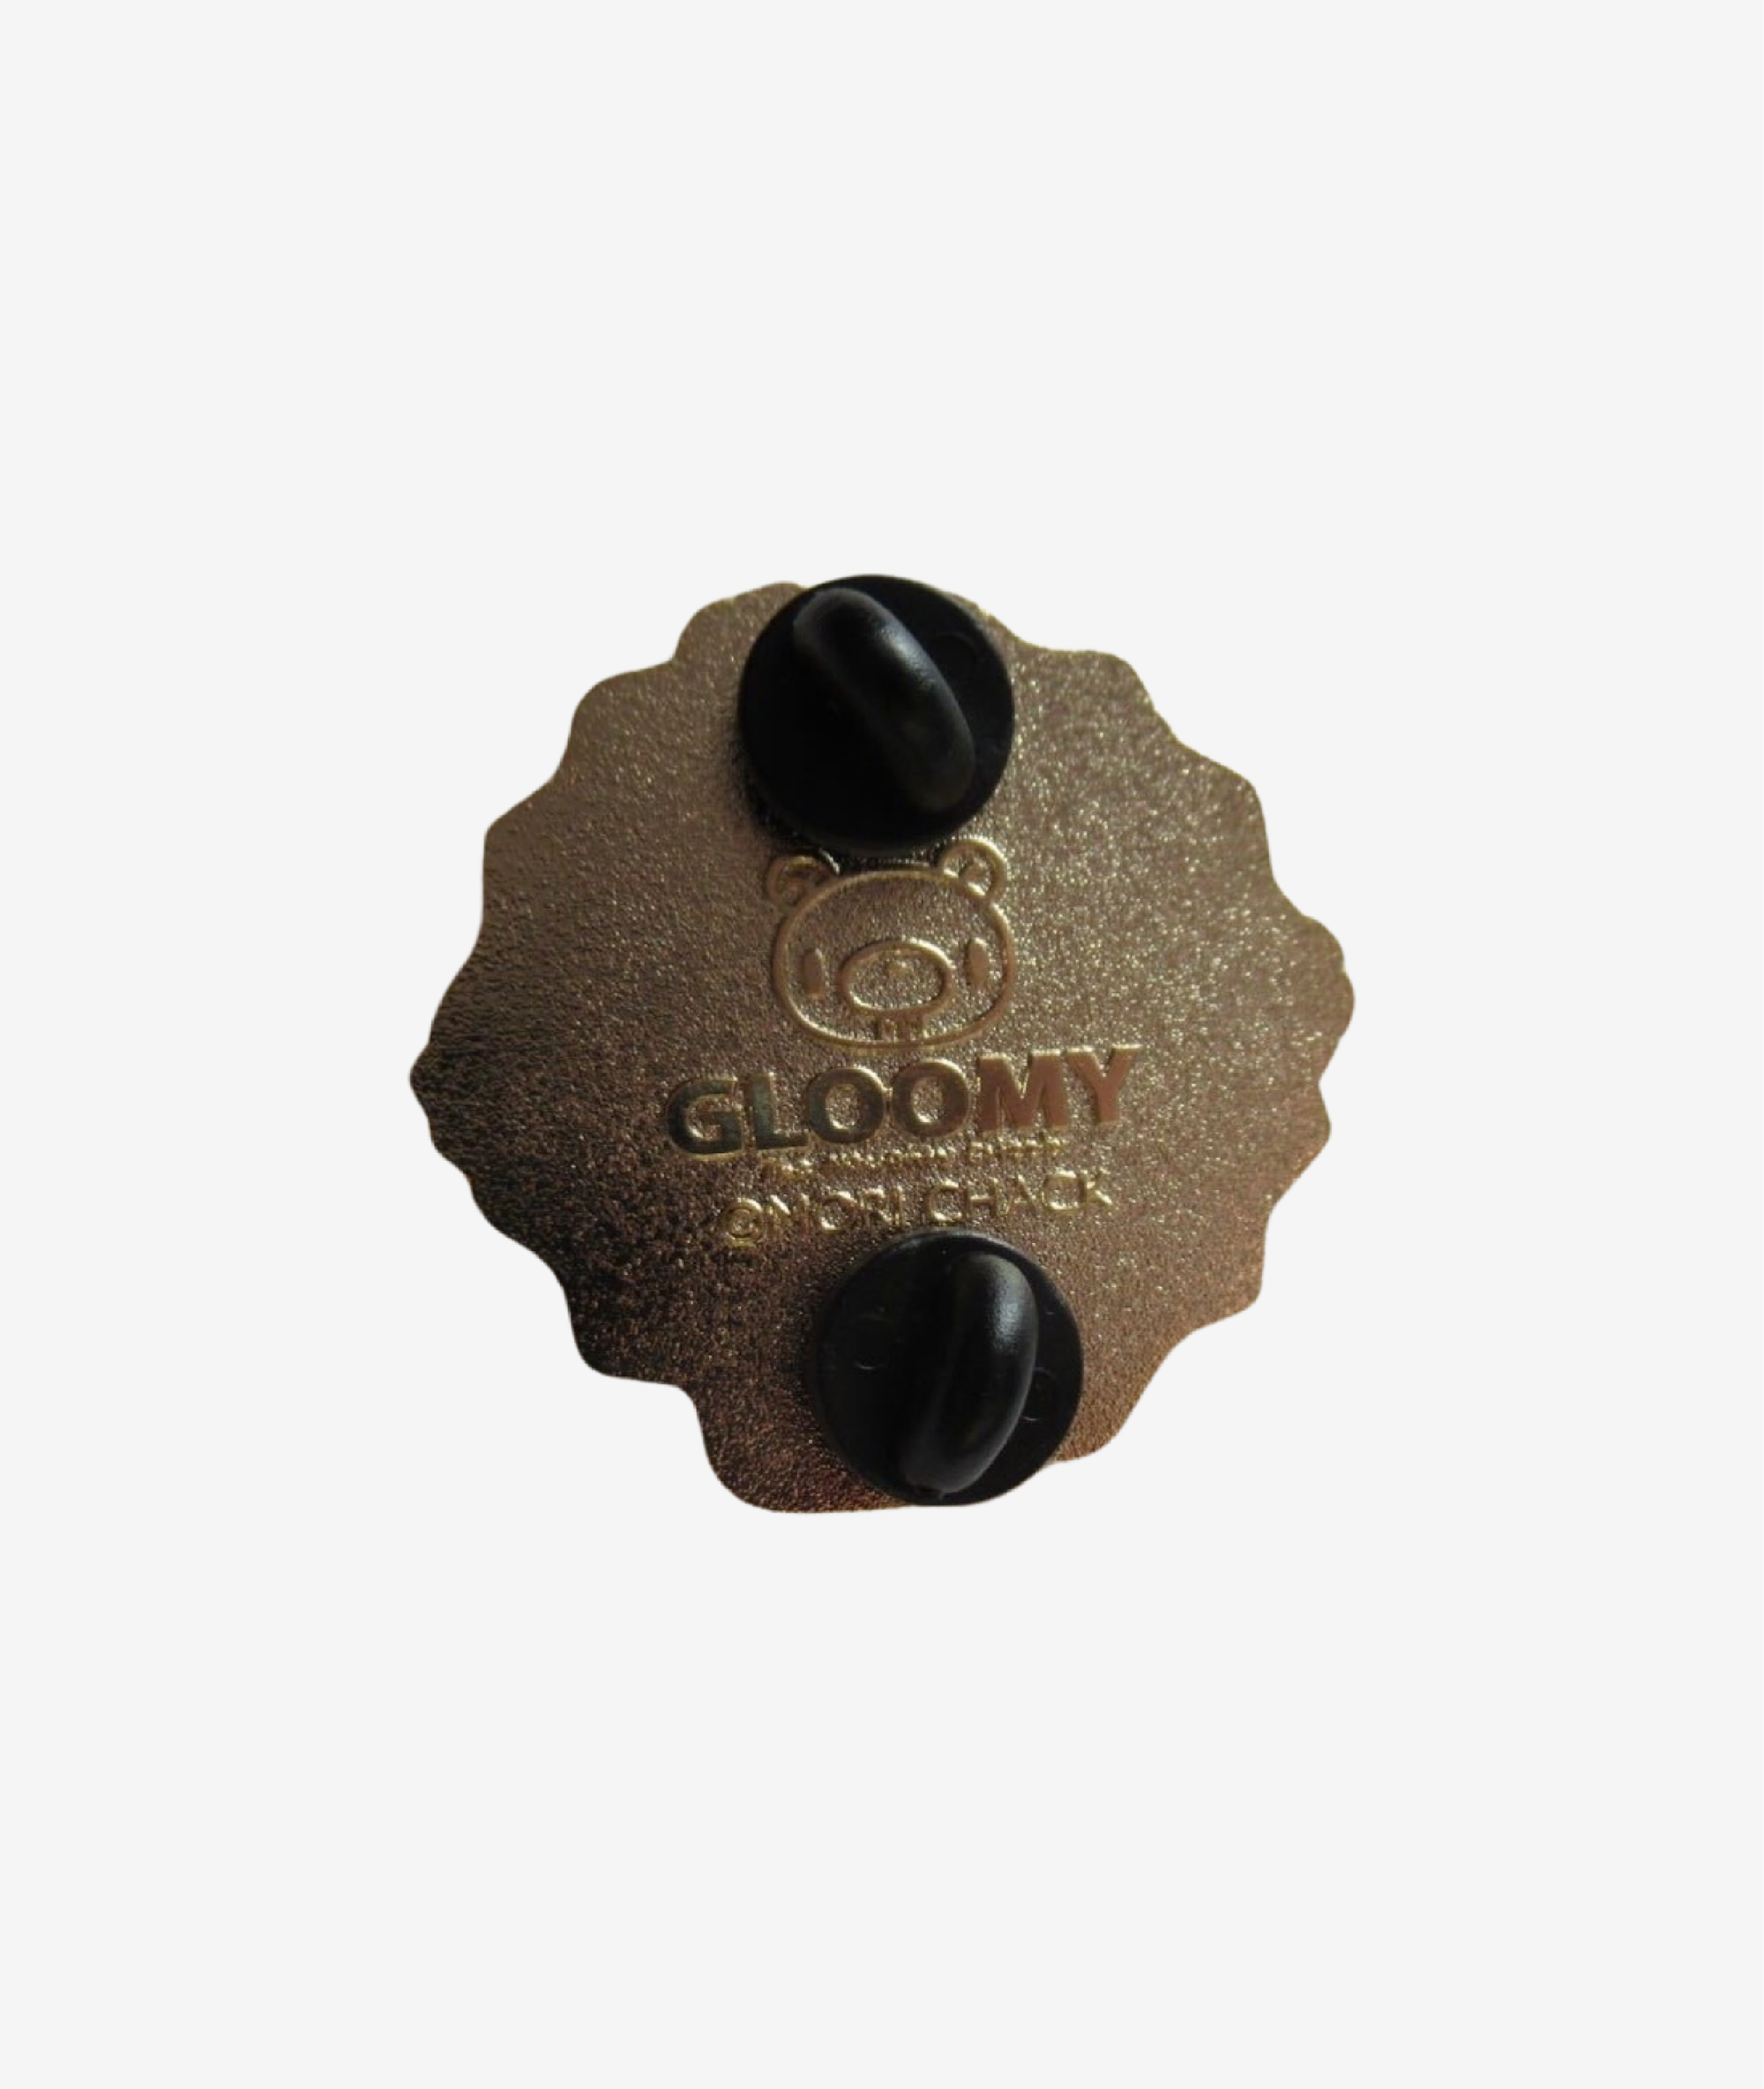 Gloomy Bear Tie-Dye Enamel Pin